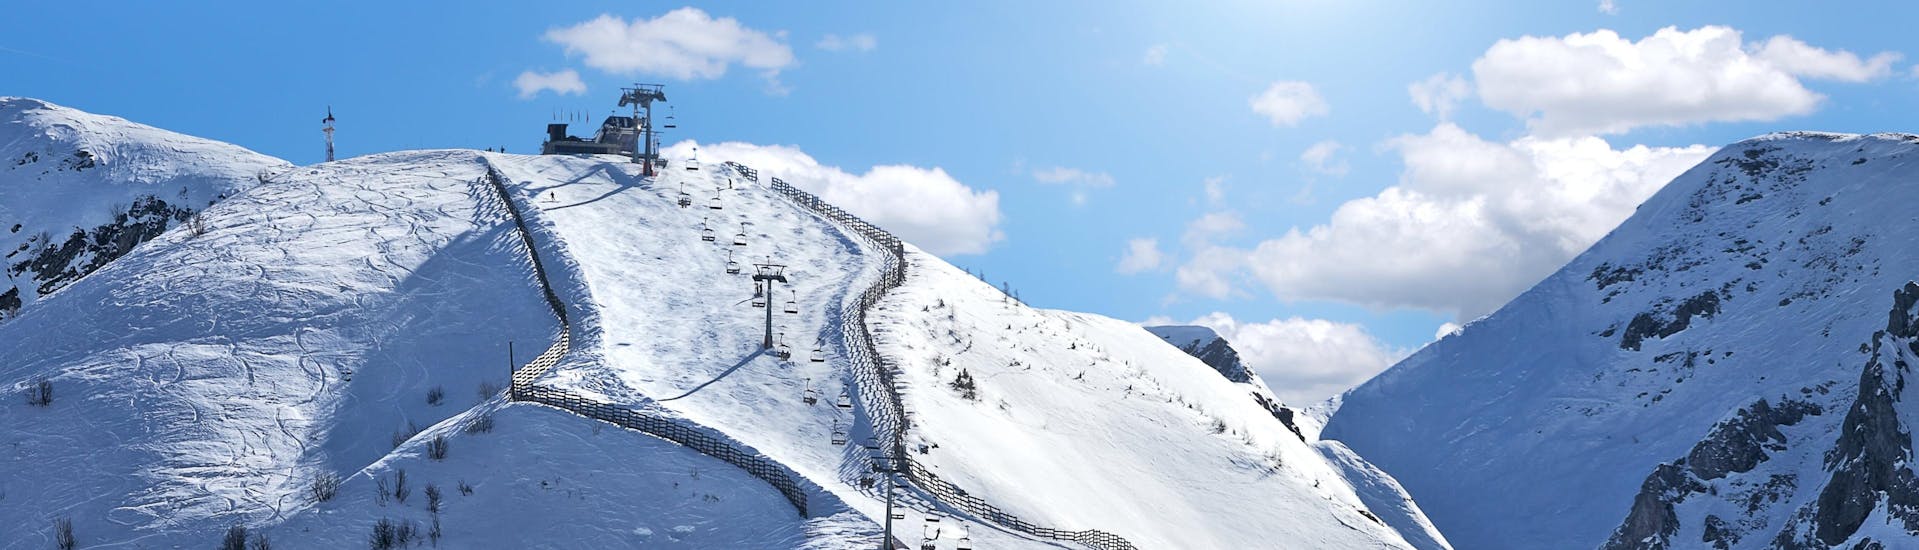 Vista sulle piste soleggiate della stazione sciistica di Limone Piemonte nella Riserva Bianca, dove le scuole di sci locali offrono le loro lezioni di sci.